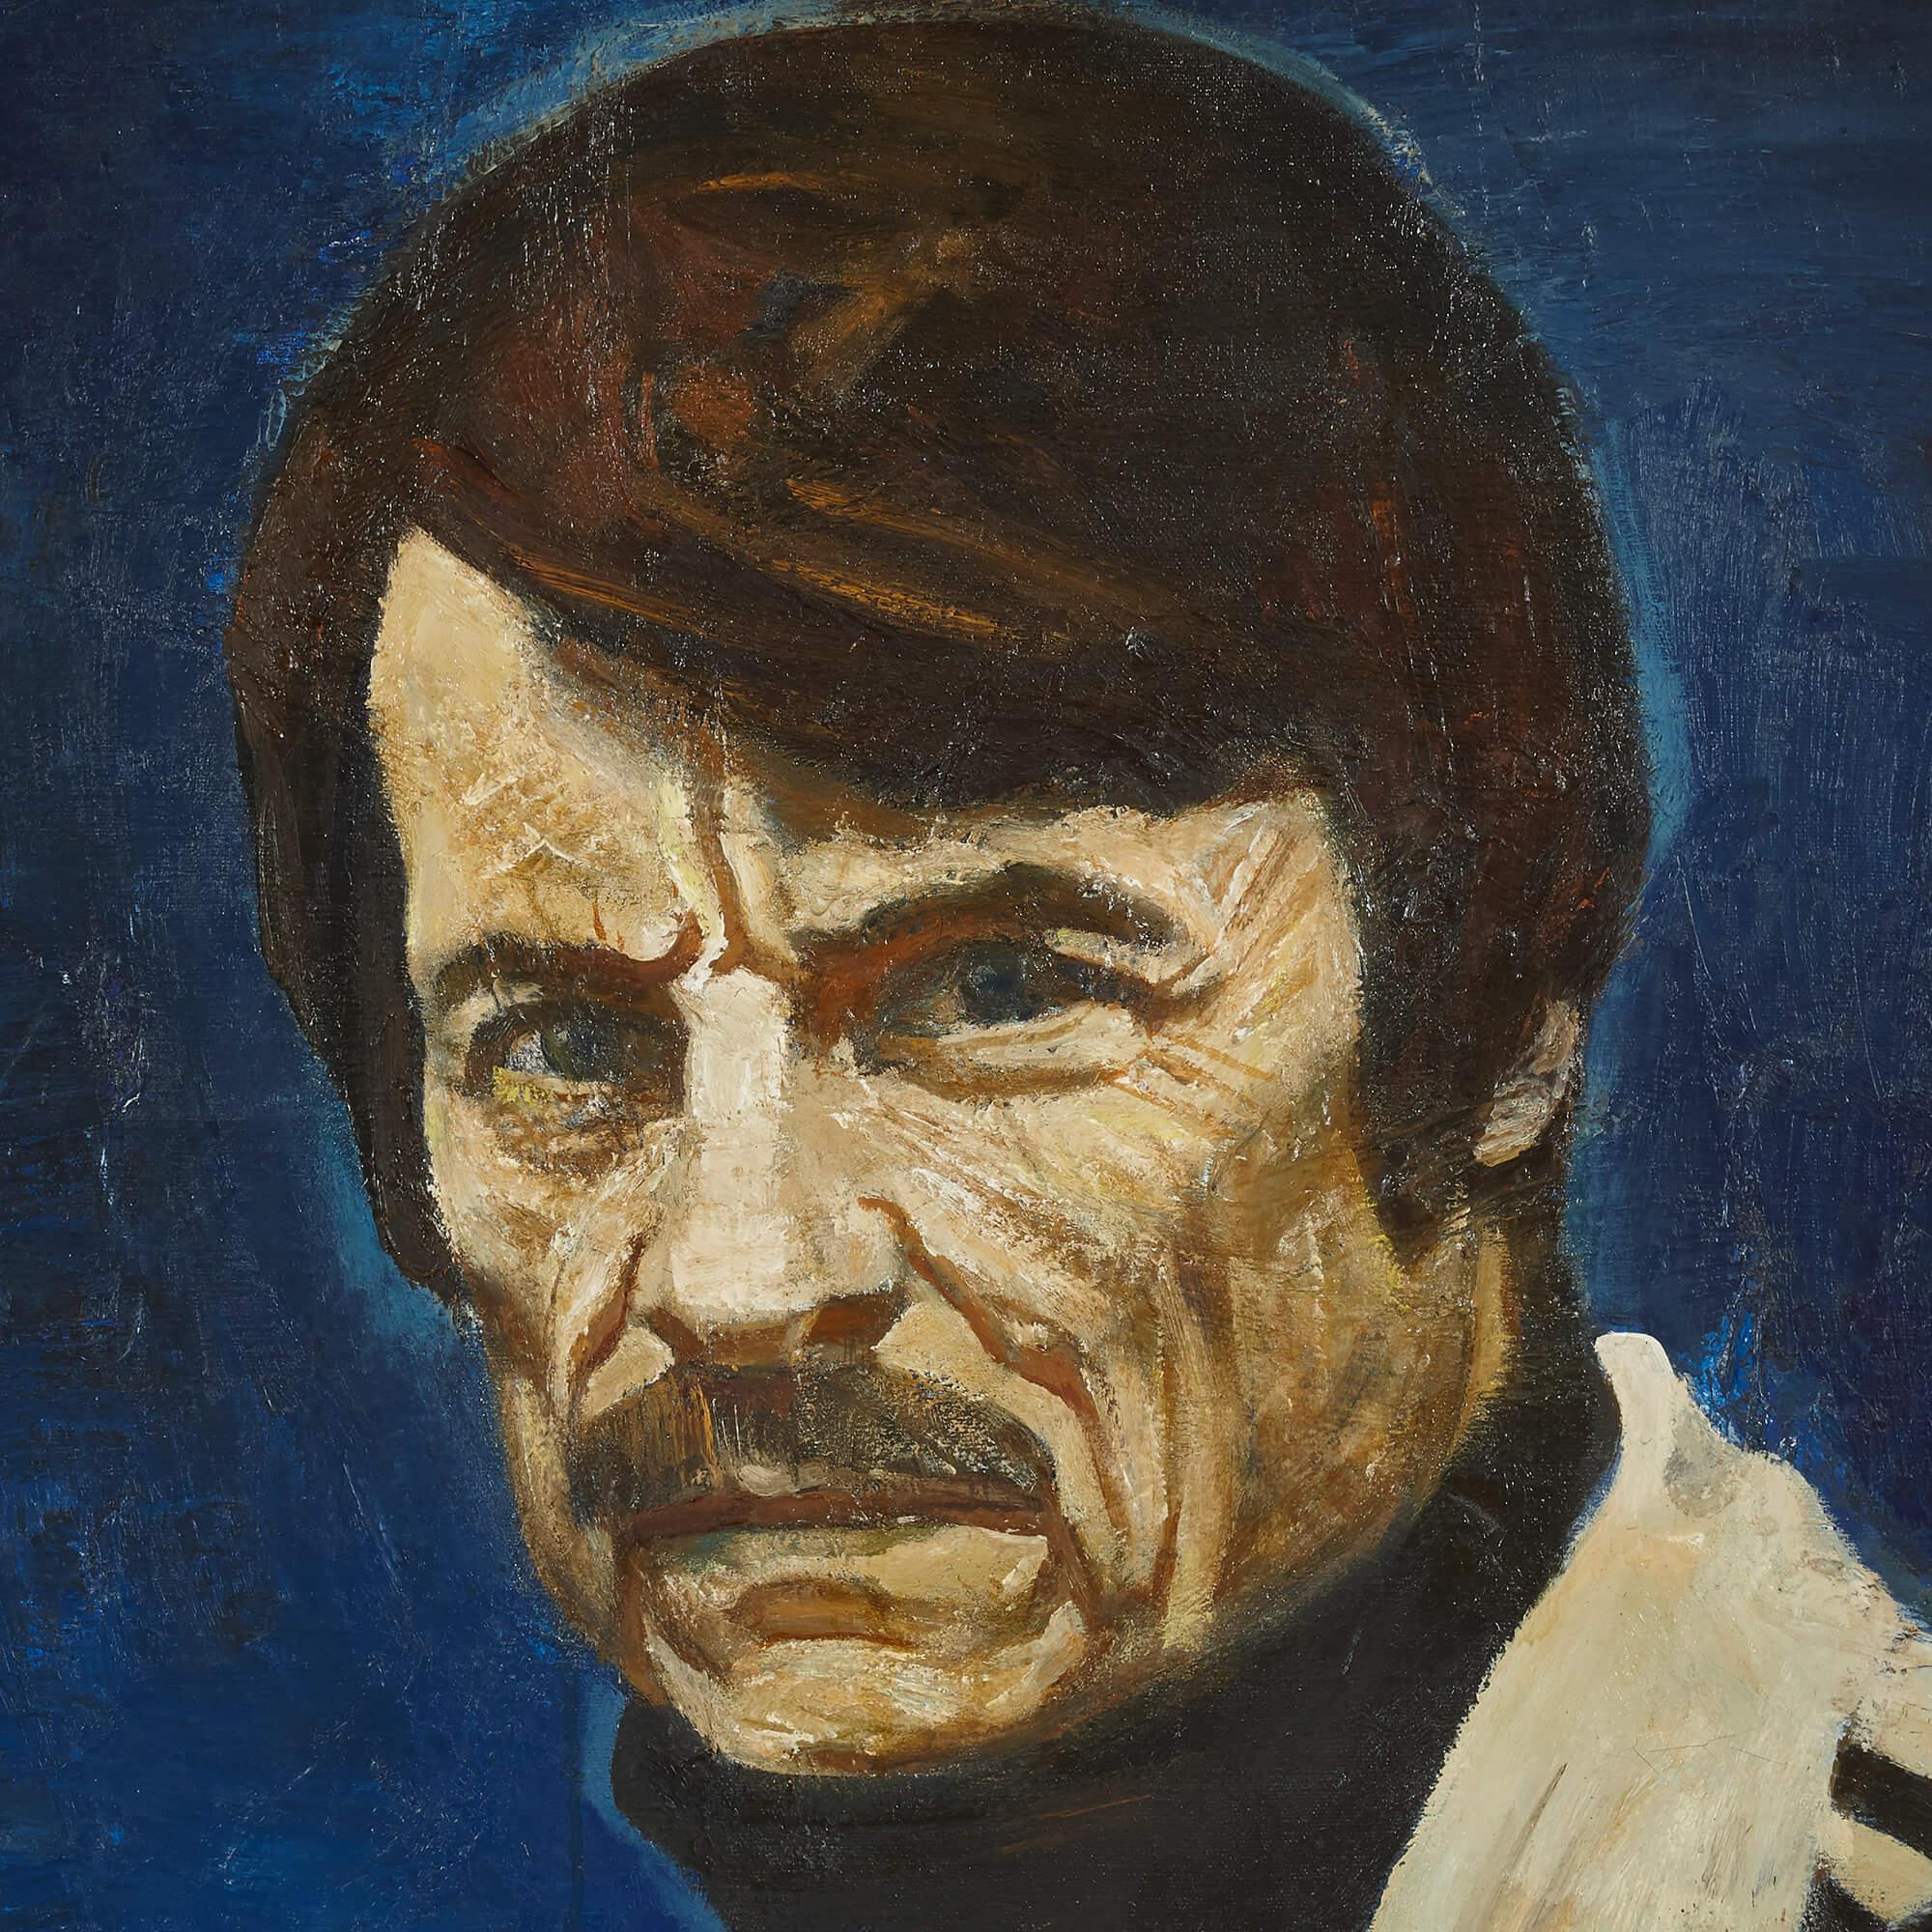 Russisches Ölporträt von Andrei Arsenevich Tarkovsky von A. Ivasenko (Schwarz), Portrait Painting, von Anatolii Ivasenko 